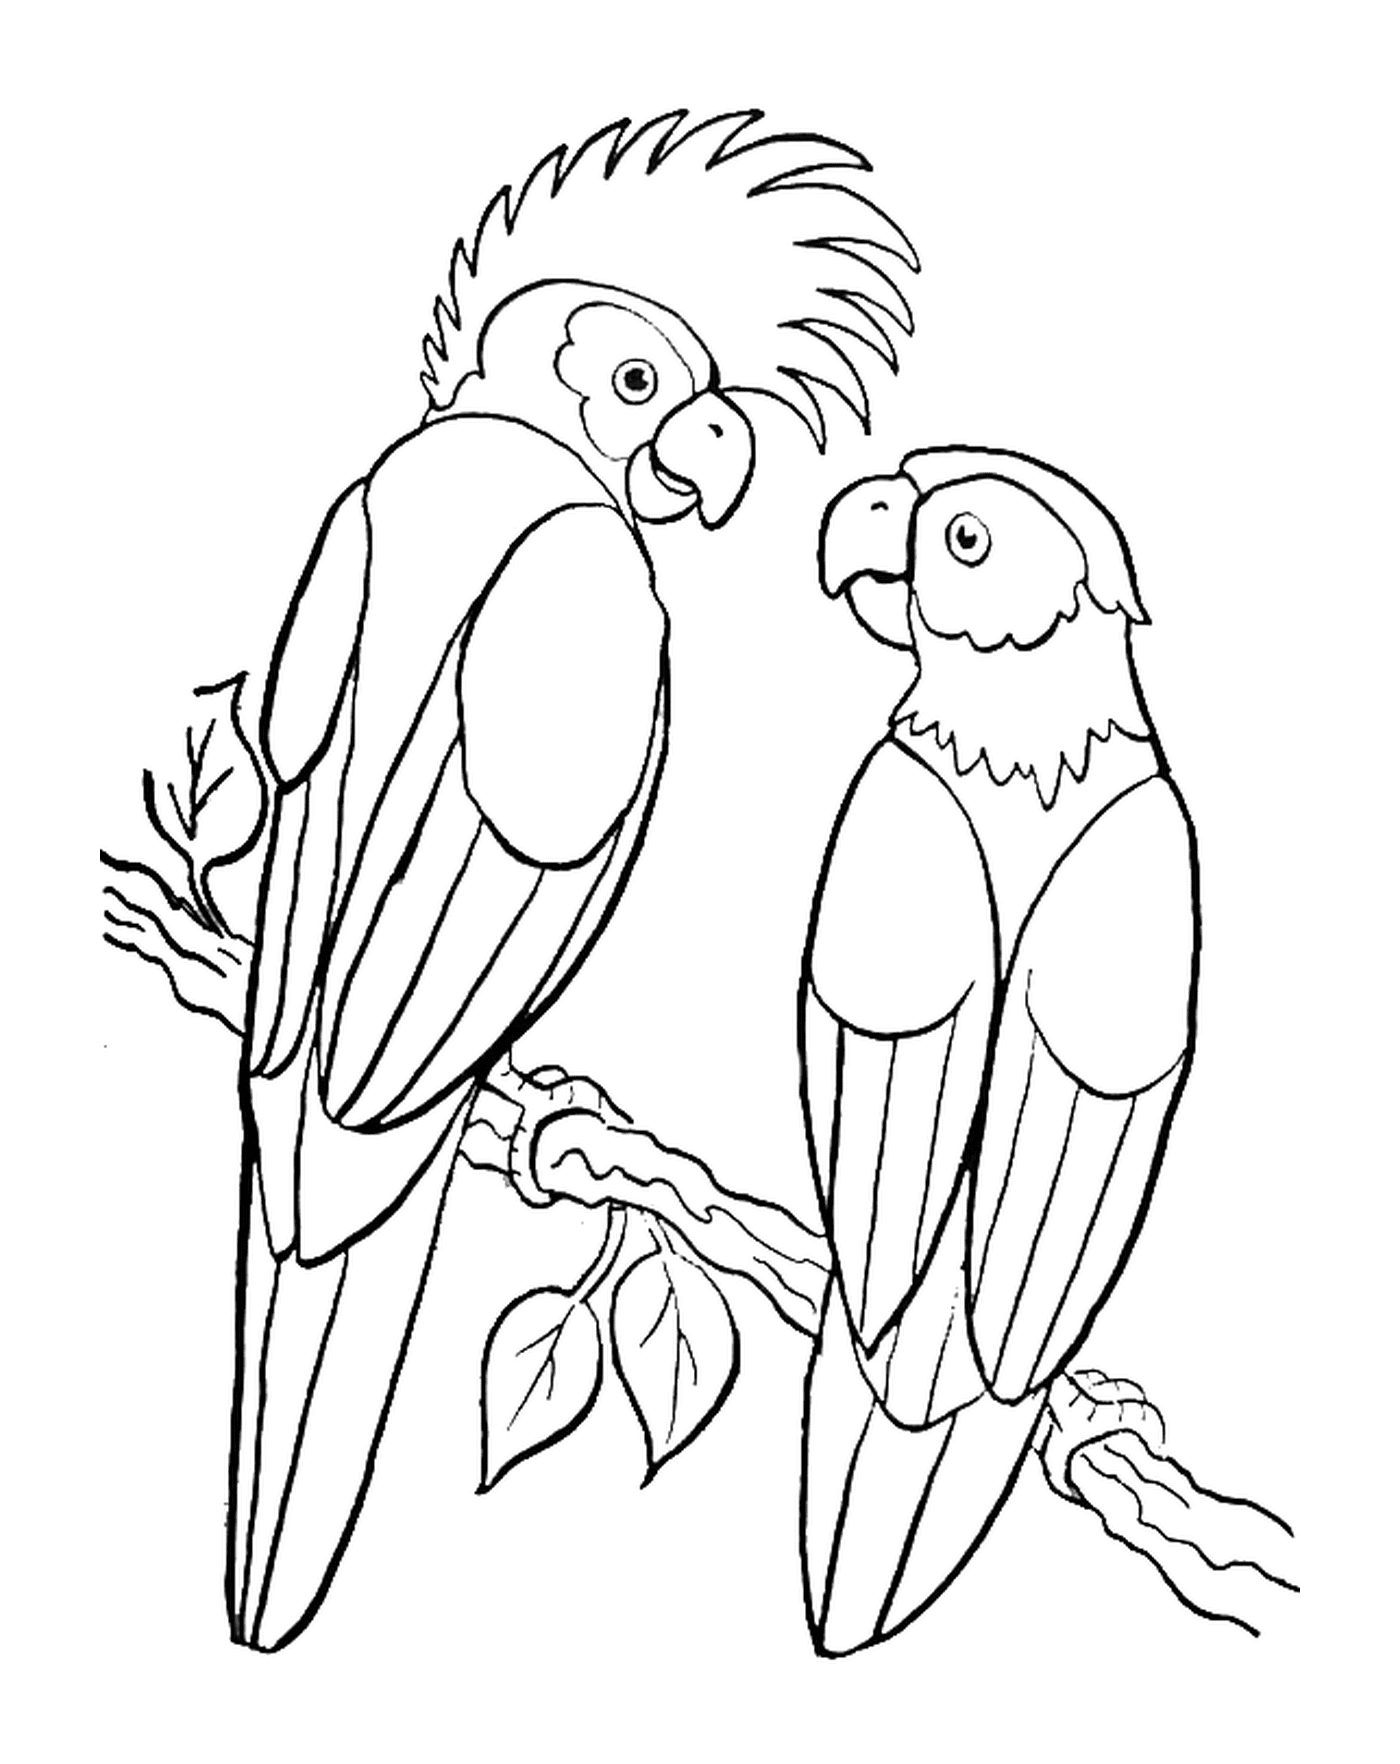  Парочка попугаев на деревянной ветке 